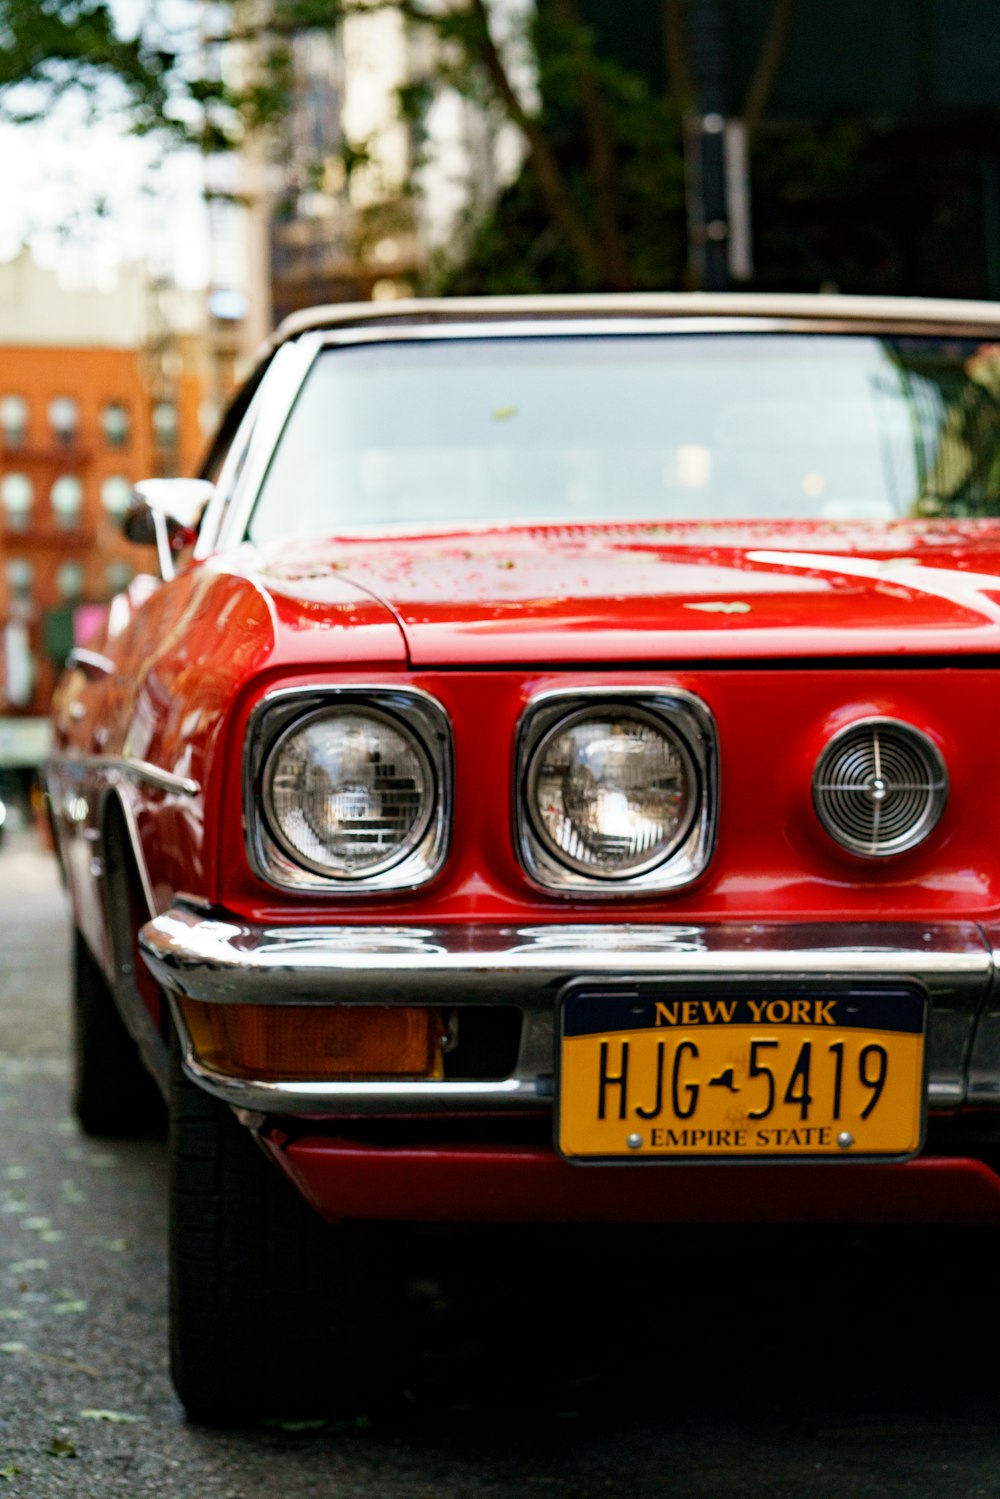 foto ravvicinata di un'auto rossa con targa New York HJG 5419